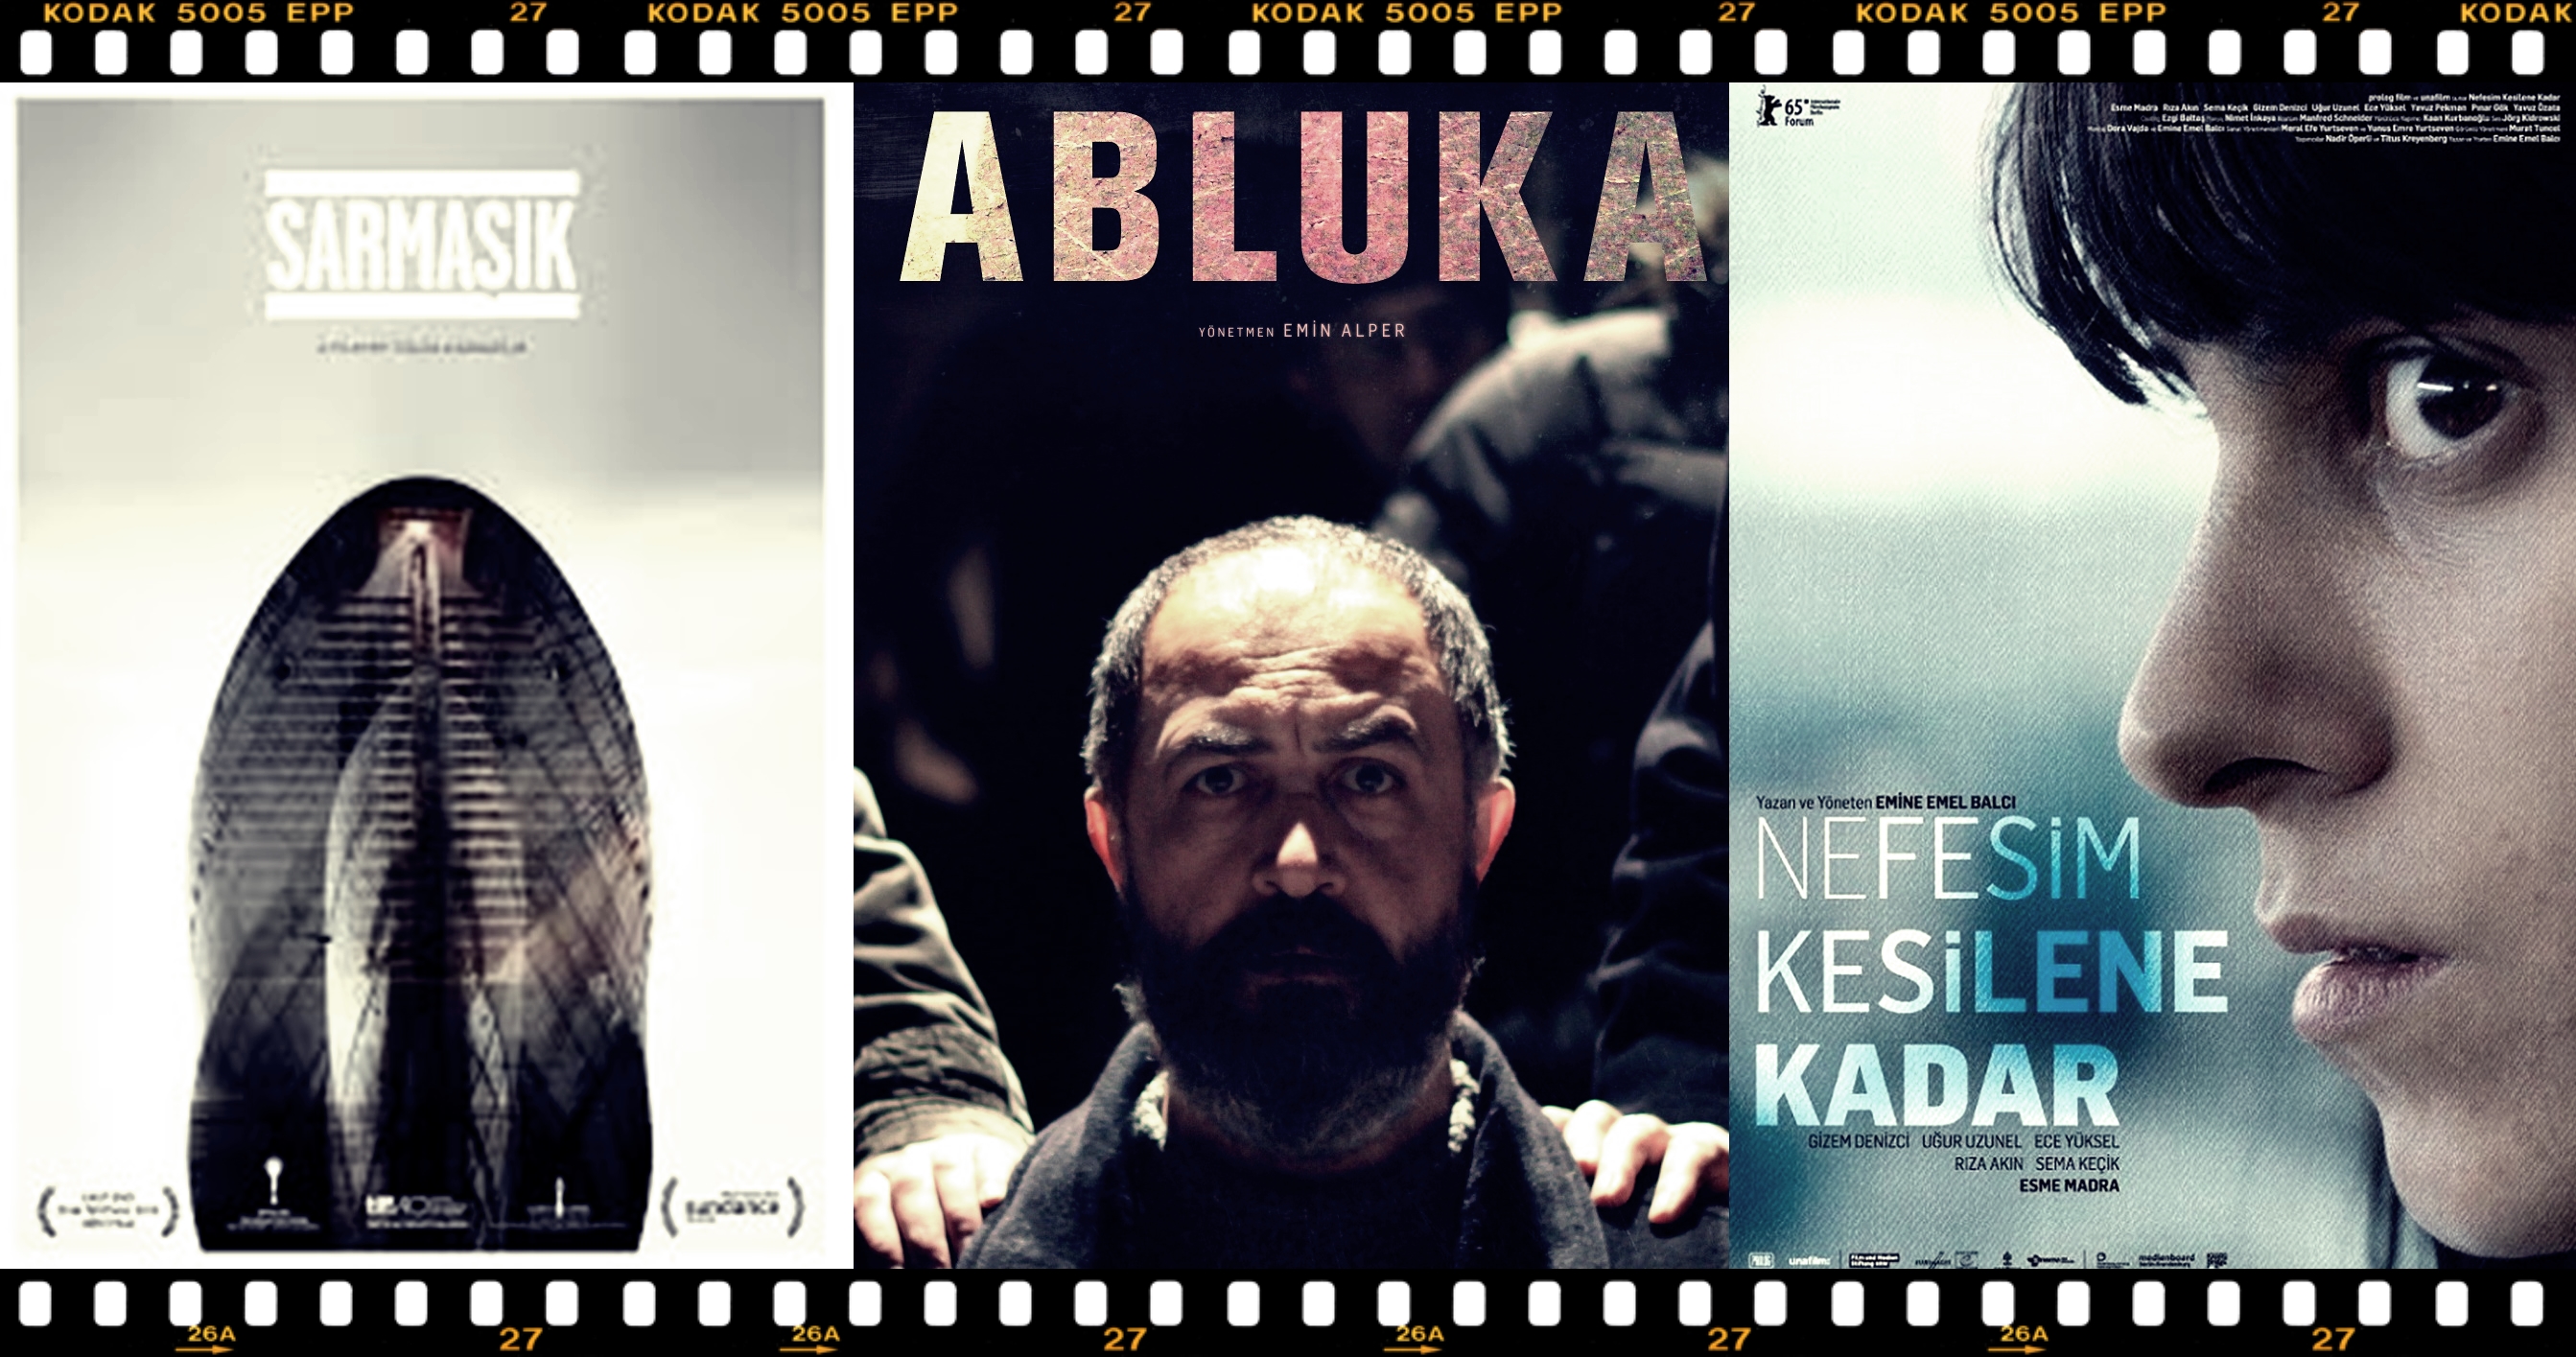 SİYAD ödüllerinde en fazla kategoride aday gösterilen film “Abluka”